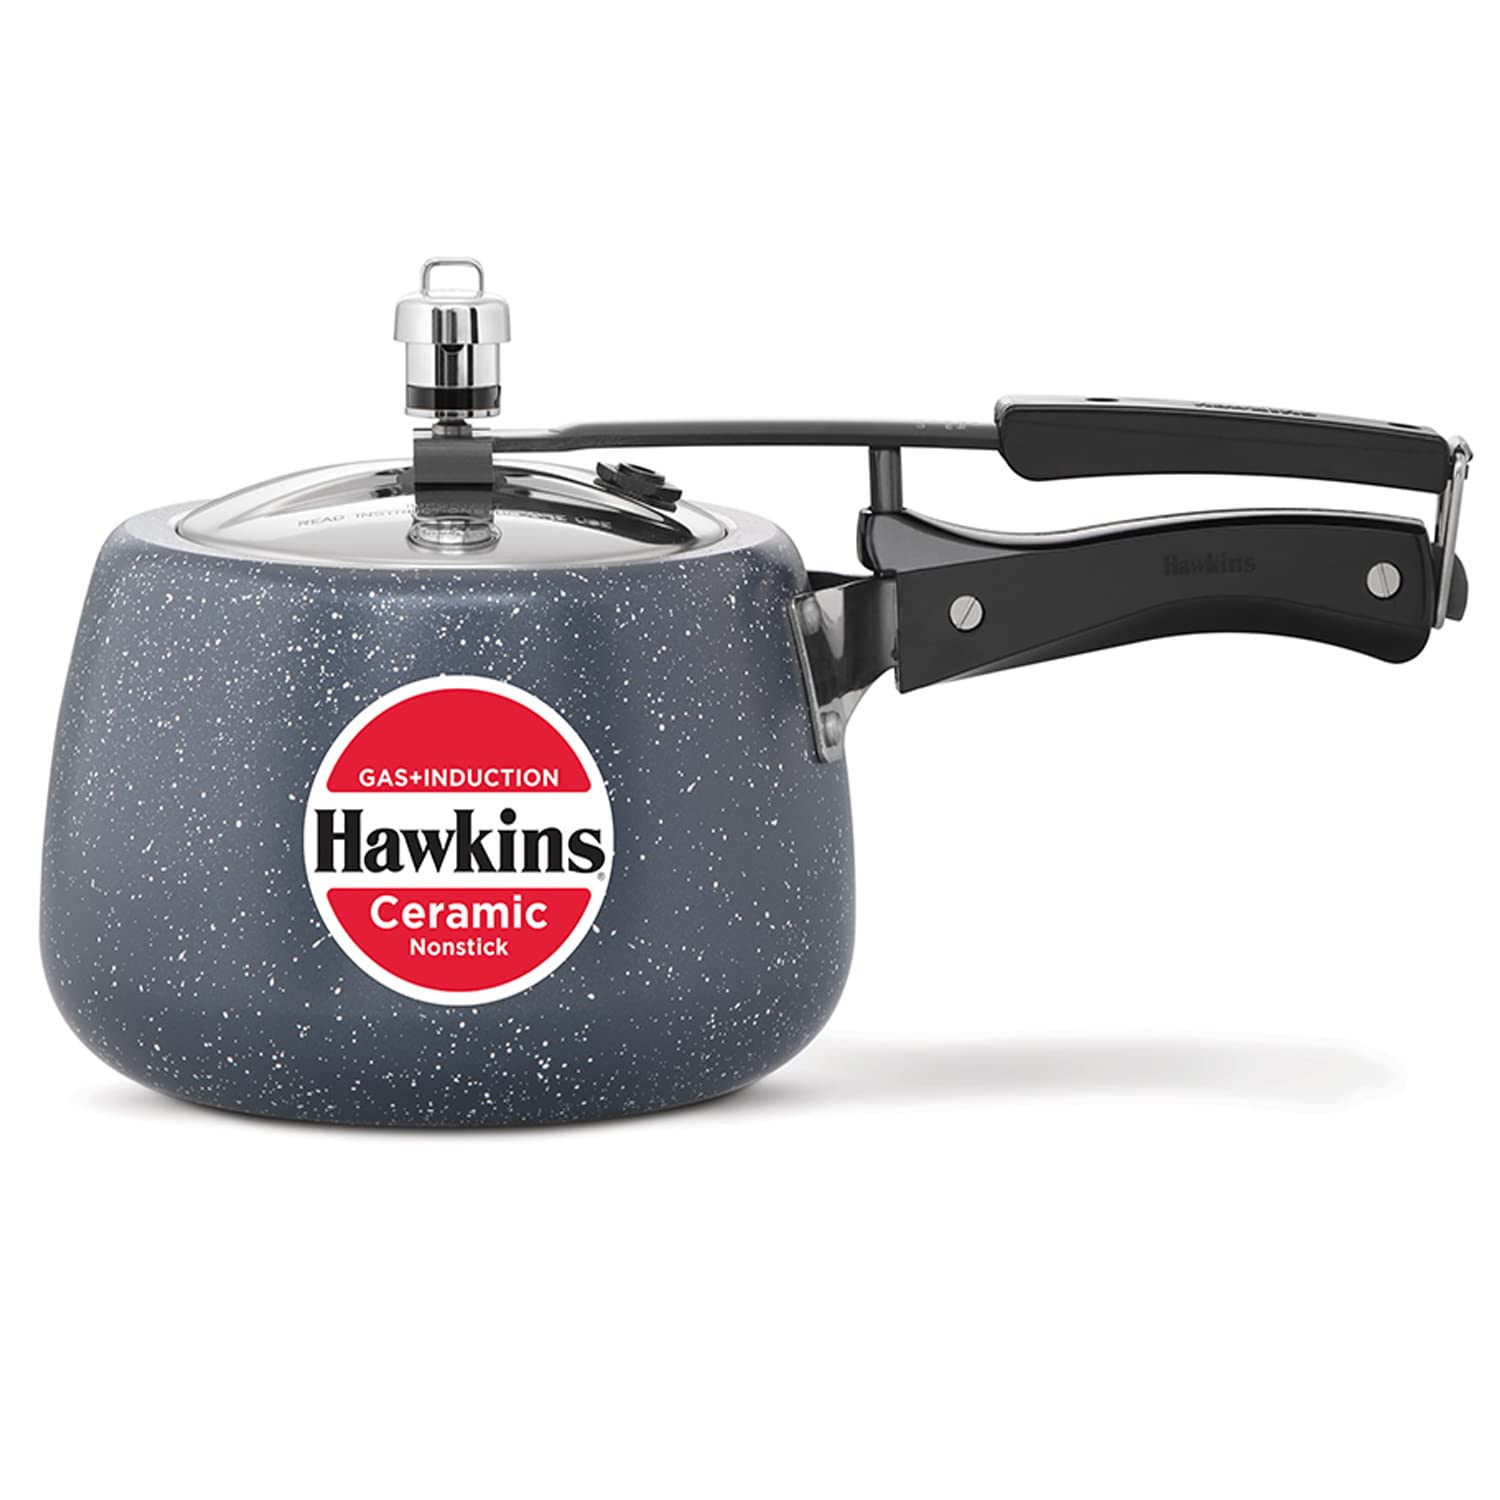 Hawkins 1.5 Litre Instaa Pressure Cooker, Induction Inner Lid Cooker, Black  (IIH15) 